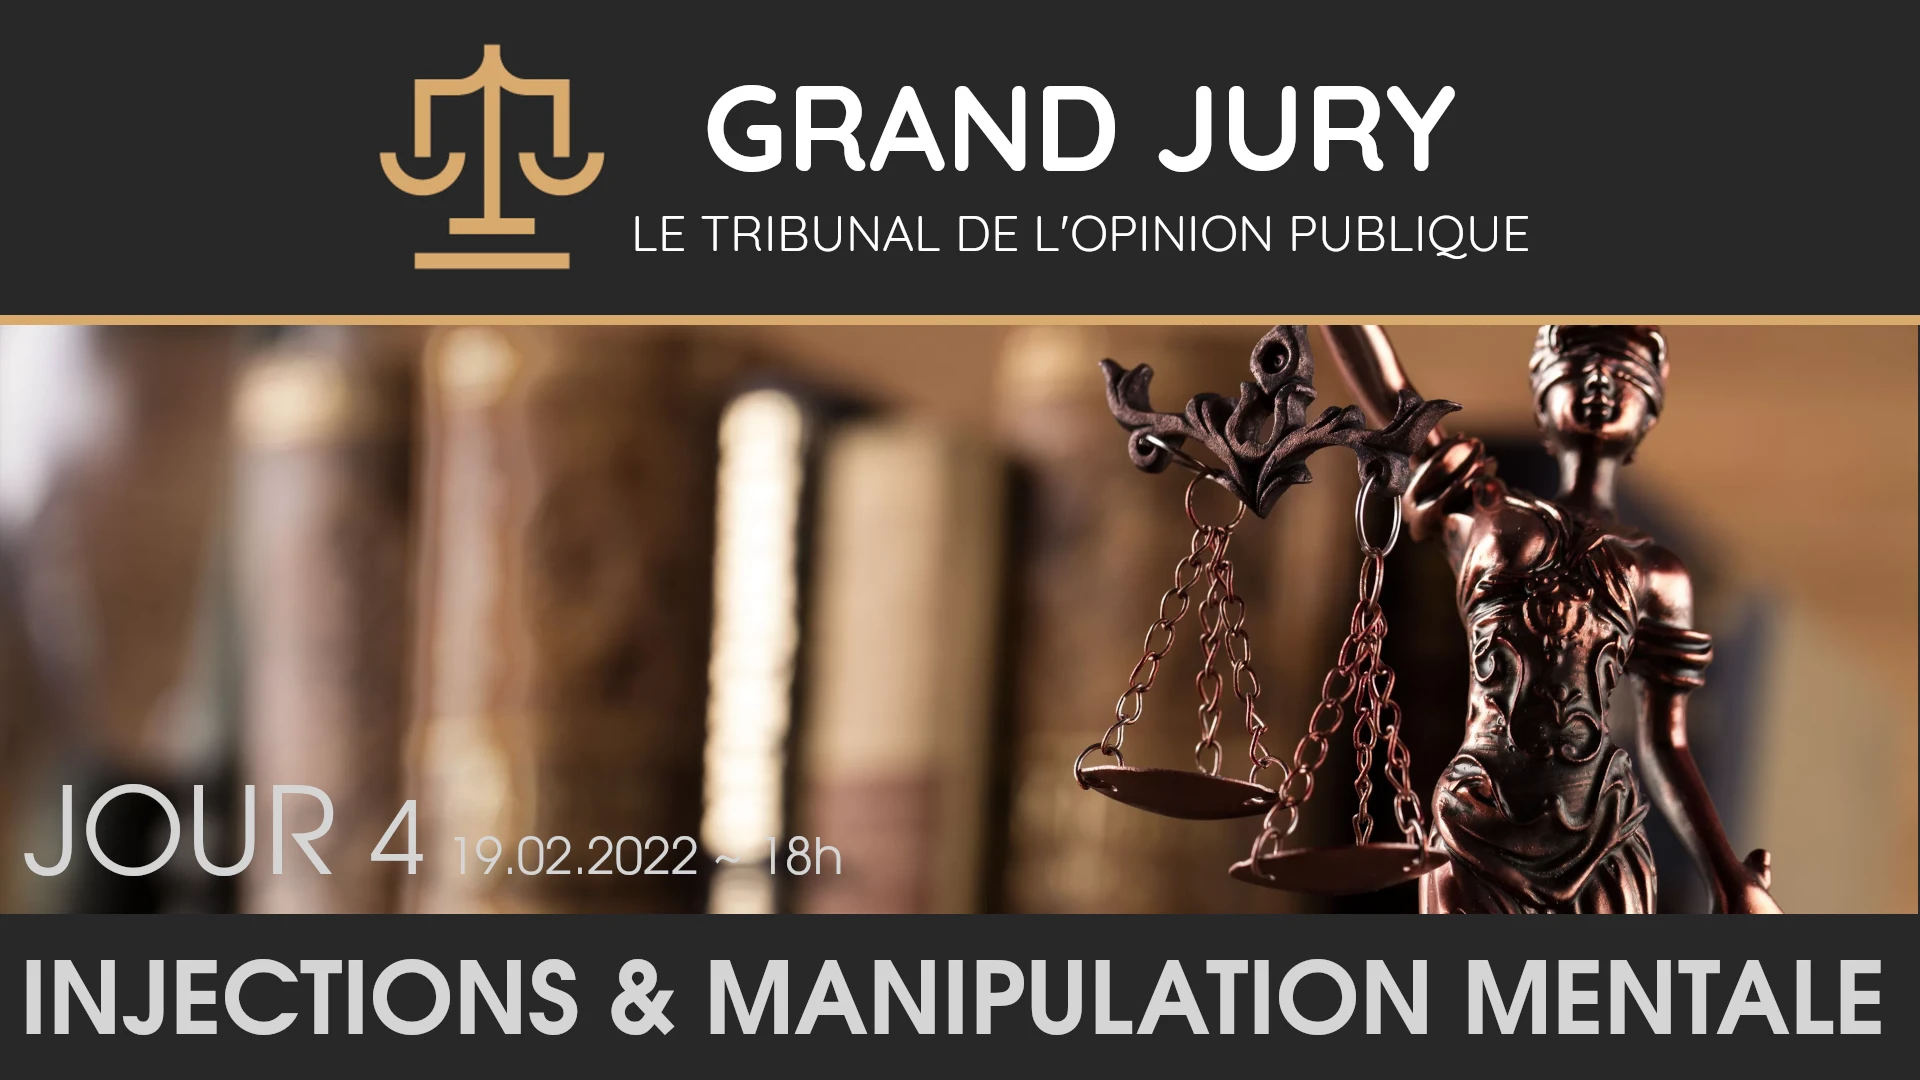 Jour 4 – Grand Jury / Tribunal de l’Opinion Publique